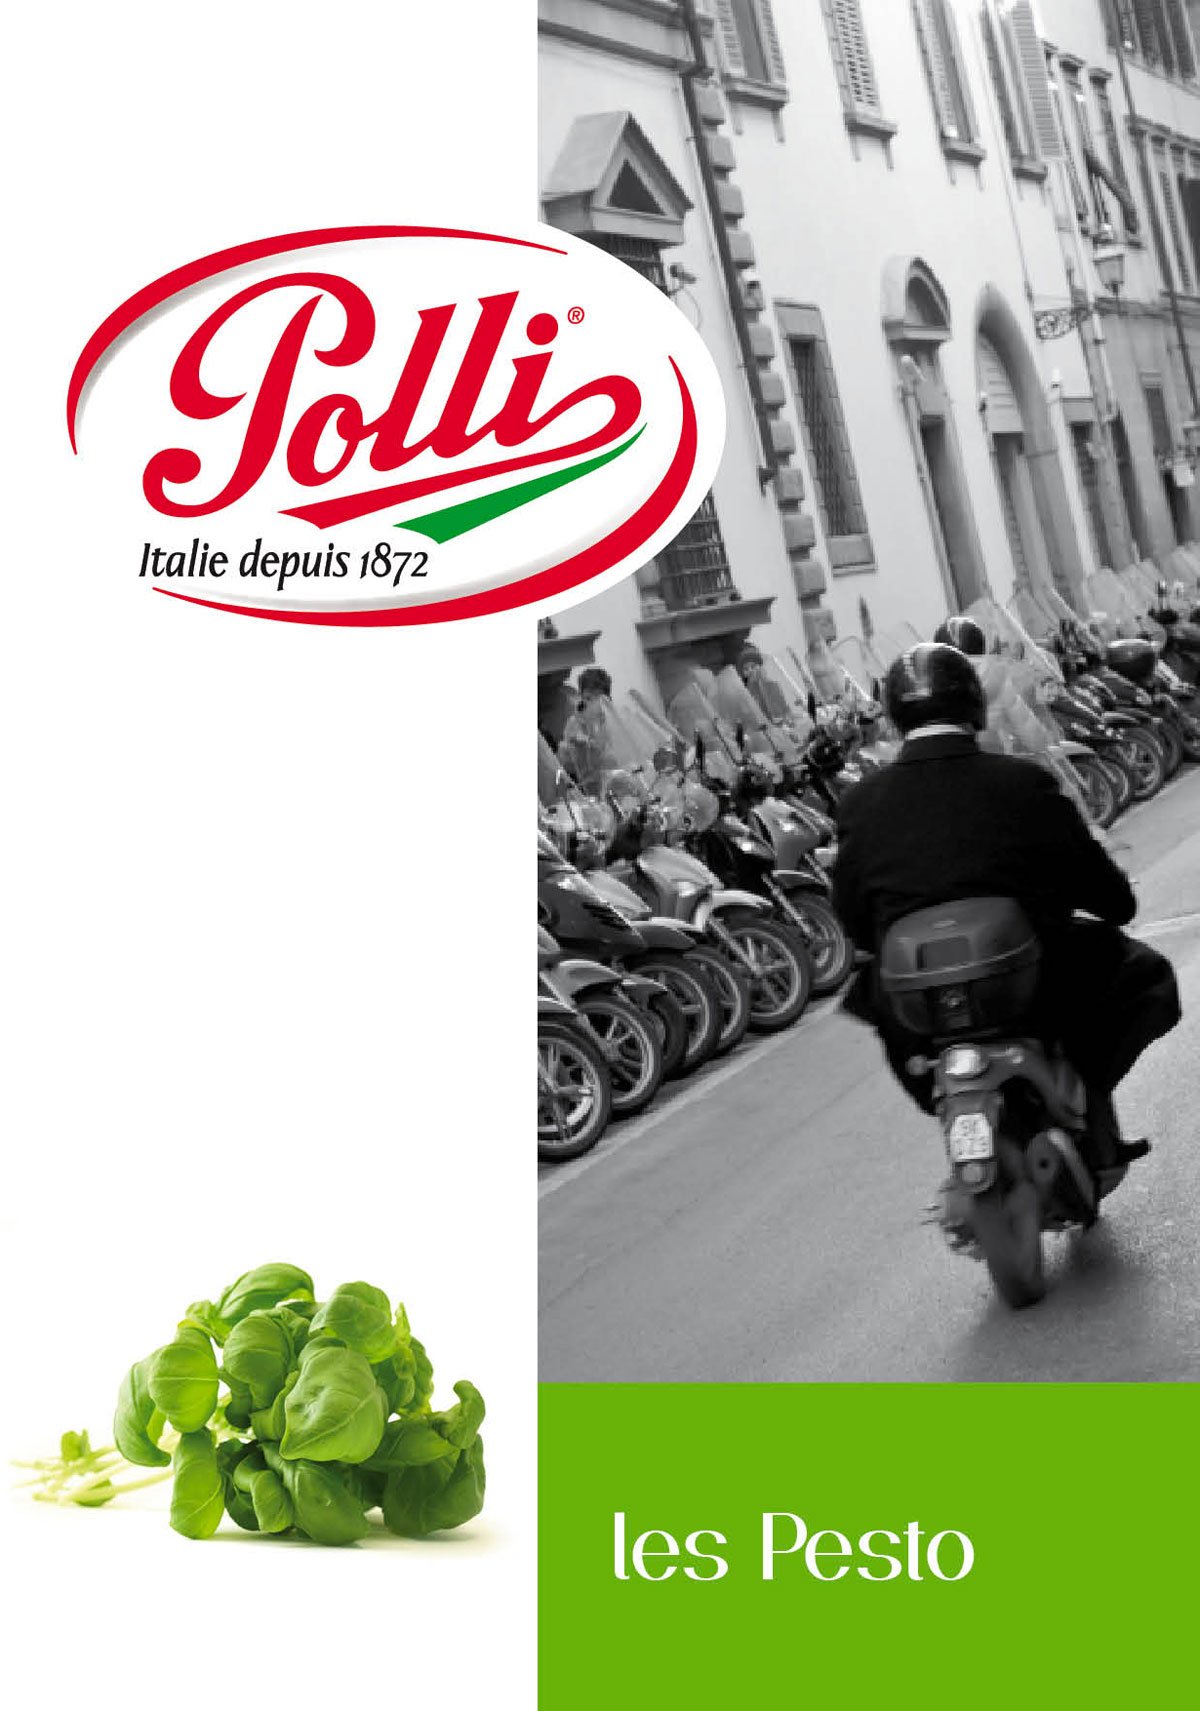 Polli - Agence Colibri, Design, Publicité, Web - Accompagnement stratégique et campagne de communication - 10